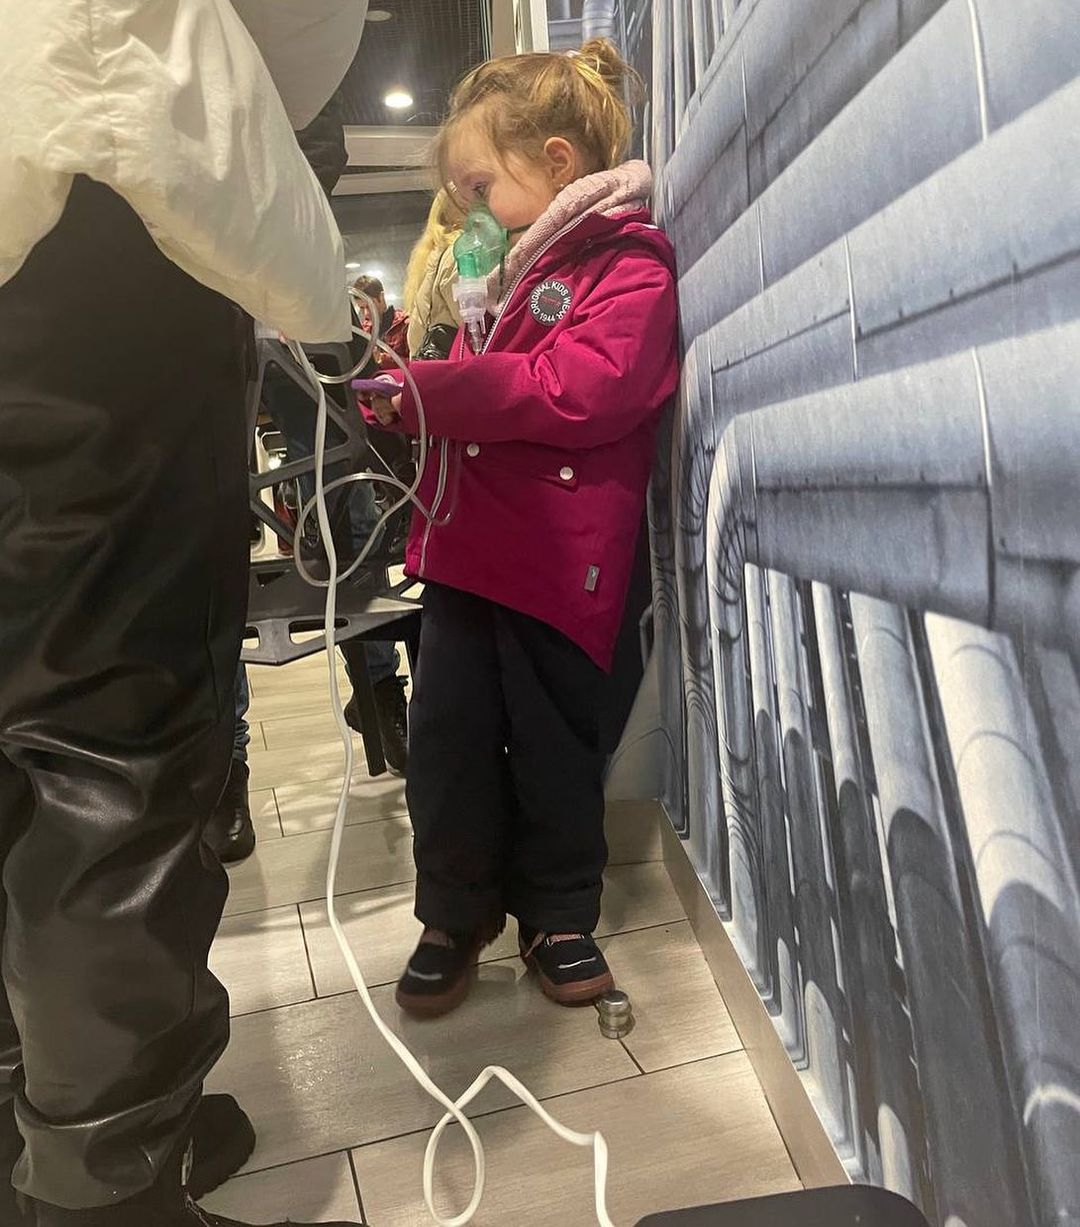 A Kyiv, une petite fille a été amenée dans une station-service afin de brancher au réseau électrique l'inhalateur nécessaire à sa vie. Photo : @natasha_marinuk/instagram